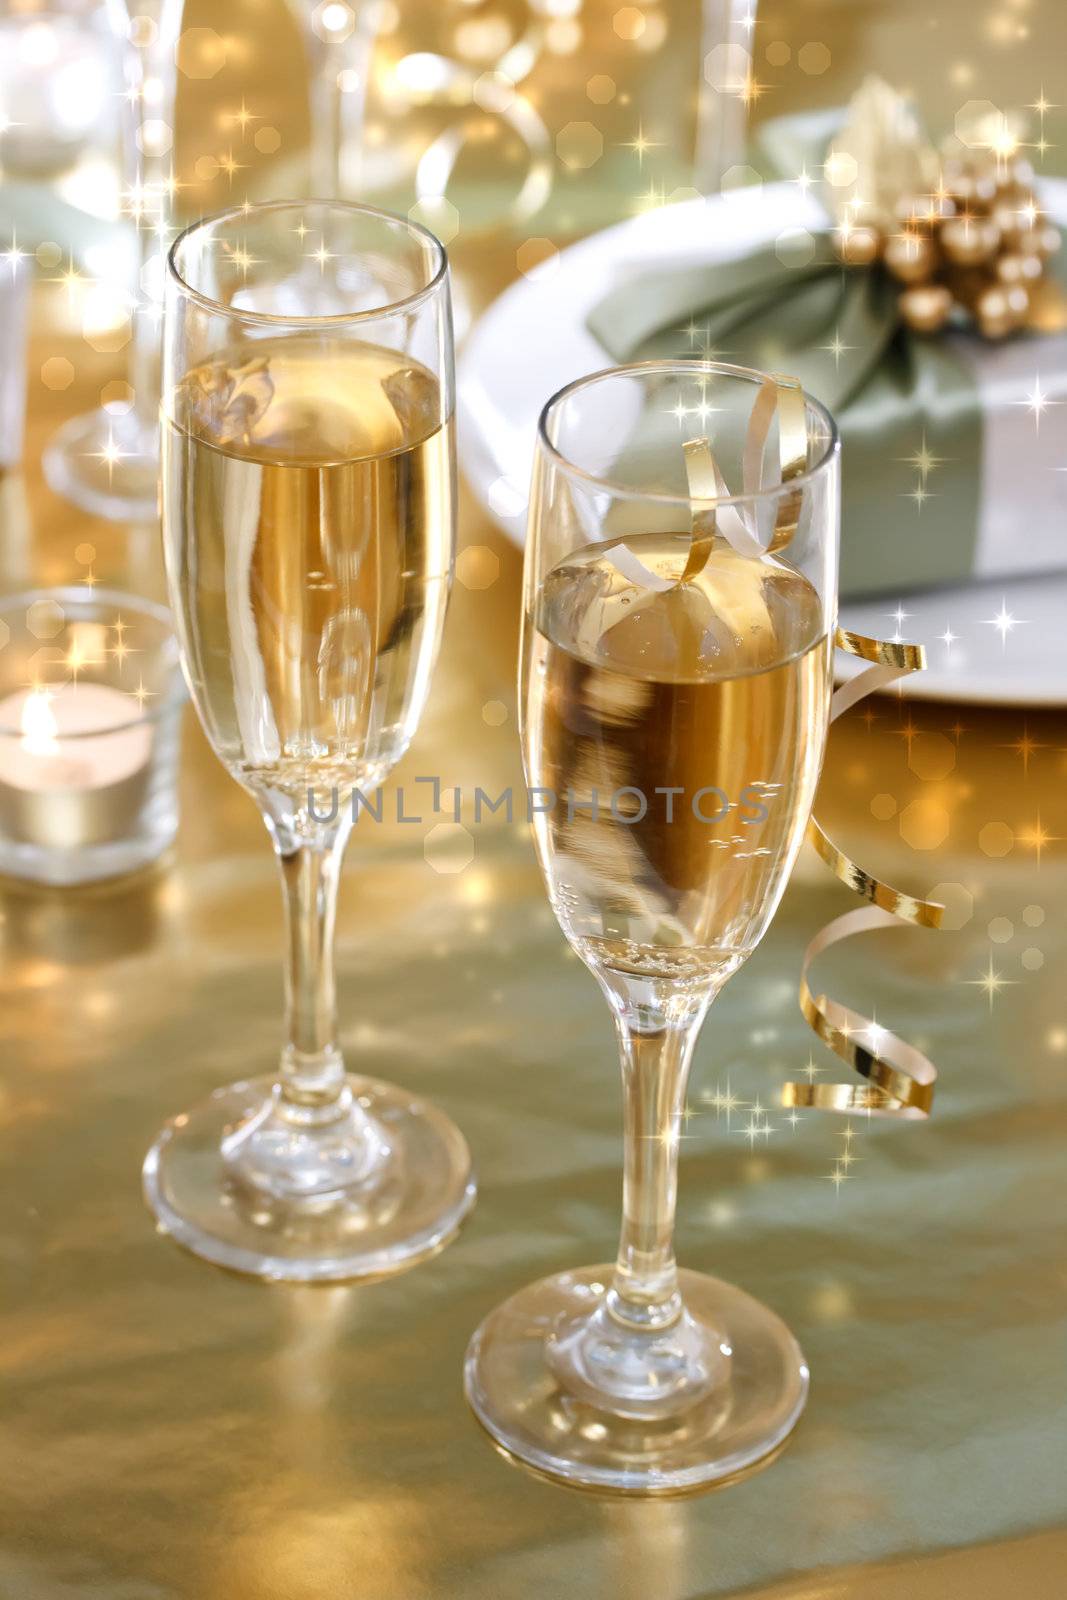 Champagne glasses on the dinner table by melpomene